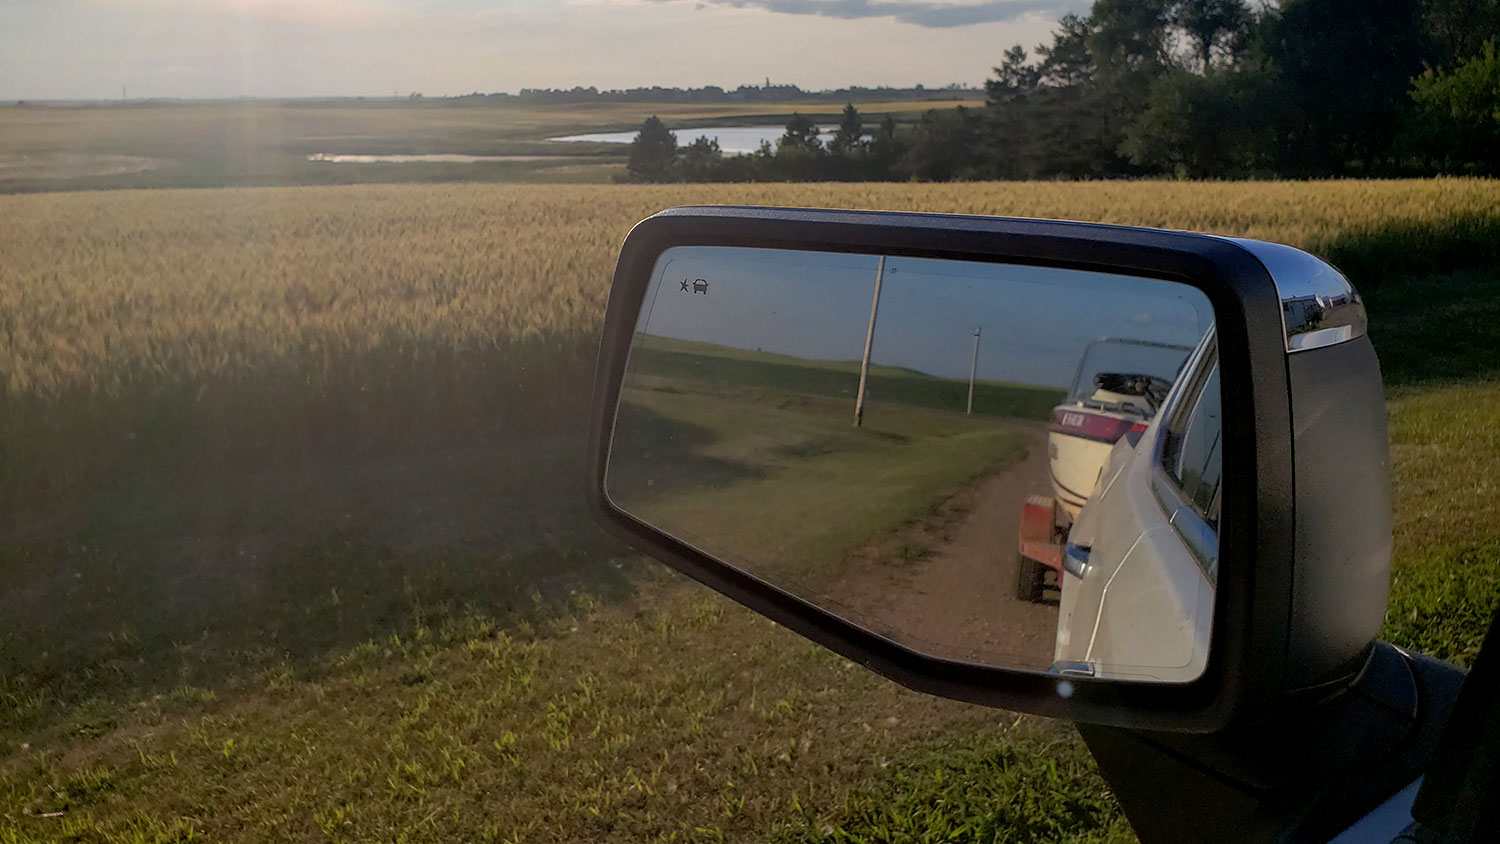 Boat on trailer in truck rearview mirror